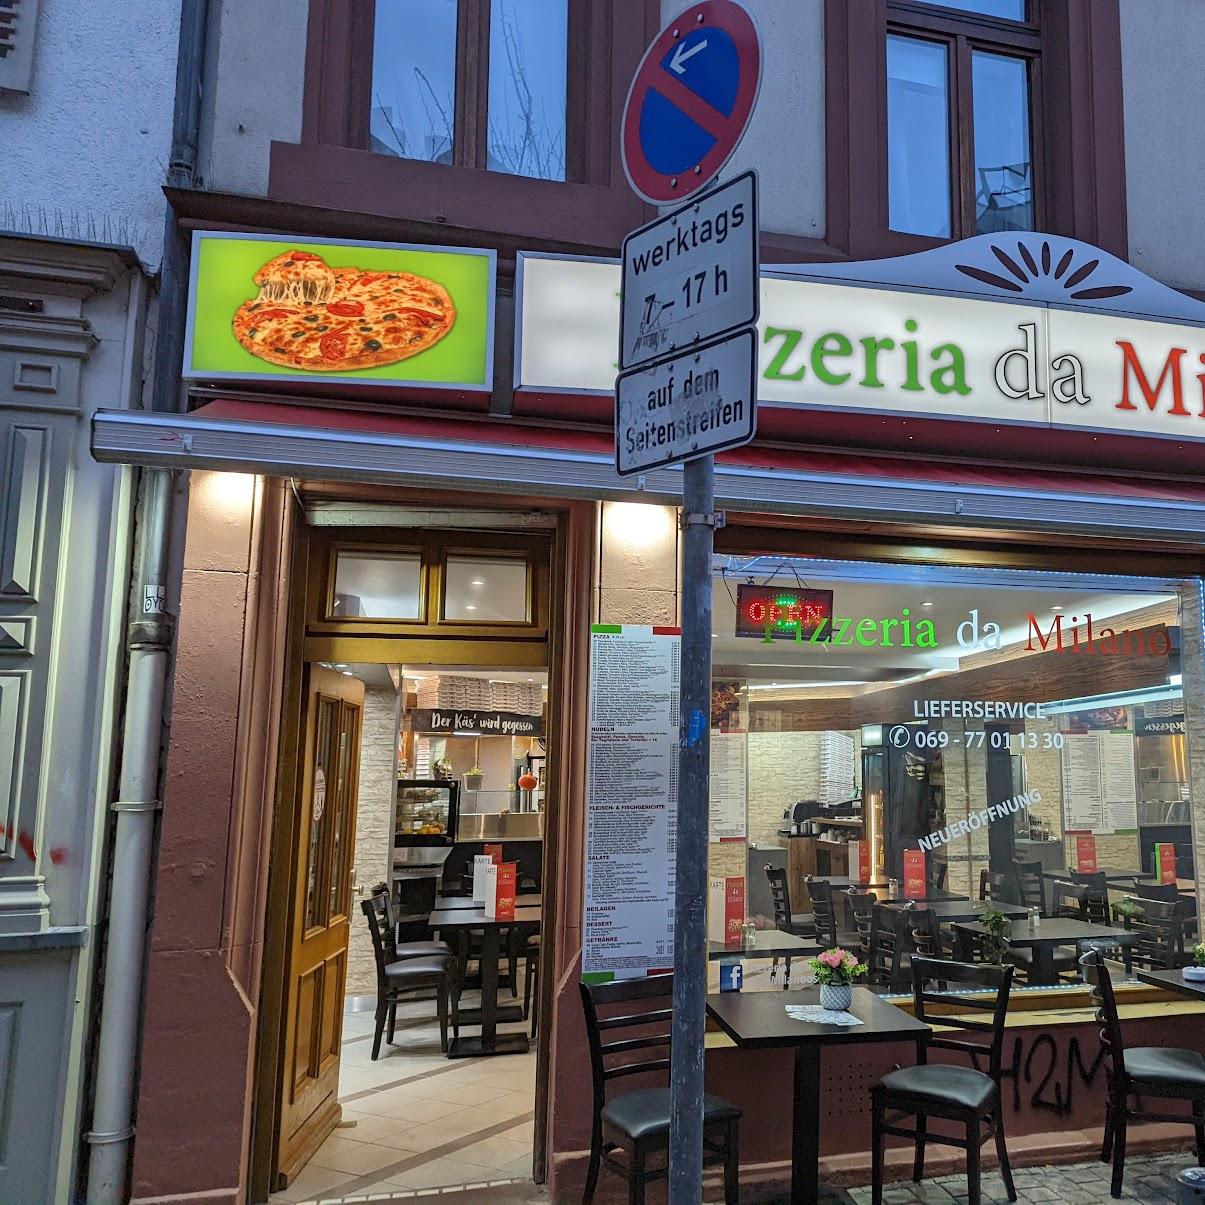 Restaurant "Pizzeria da Milano" in Frankfurt am Main